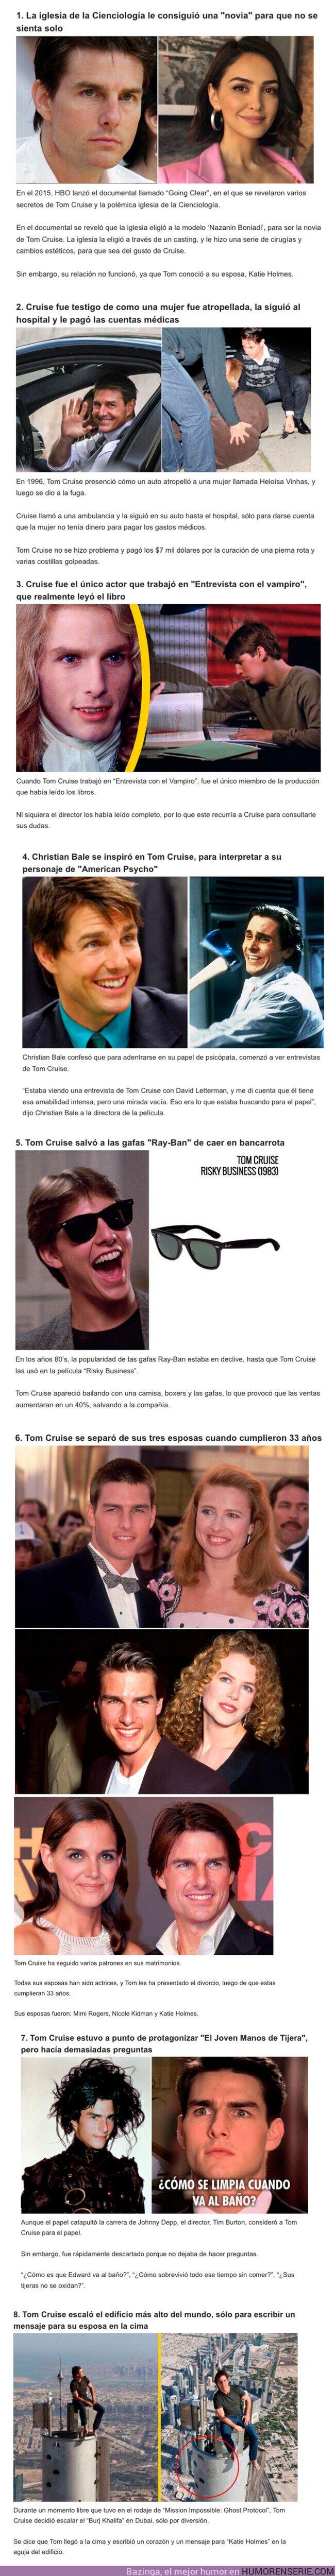 107565 - GALERÍA: 8 Historias de la vida de Tom Cruise, que parecen falsas pero son 100% reales